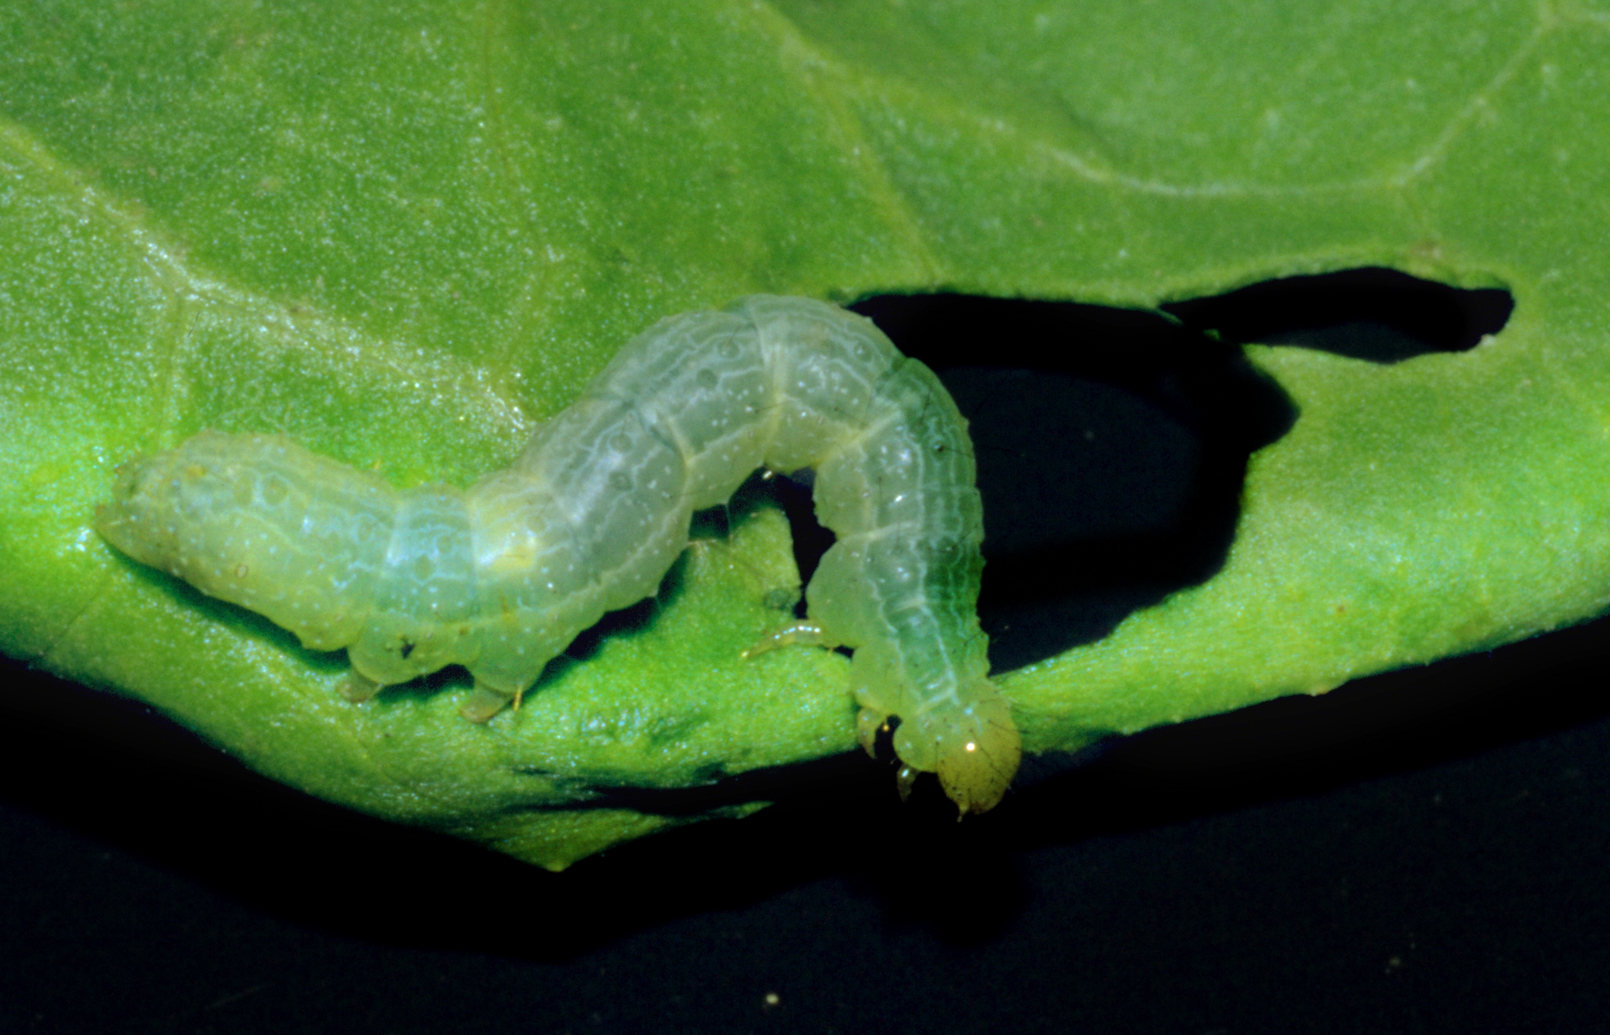 Caterpillar of Silver-Y moth Autographa gamma damaging leaf